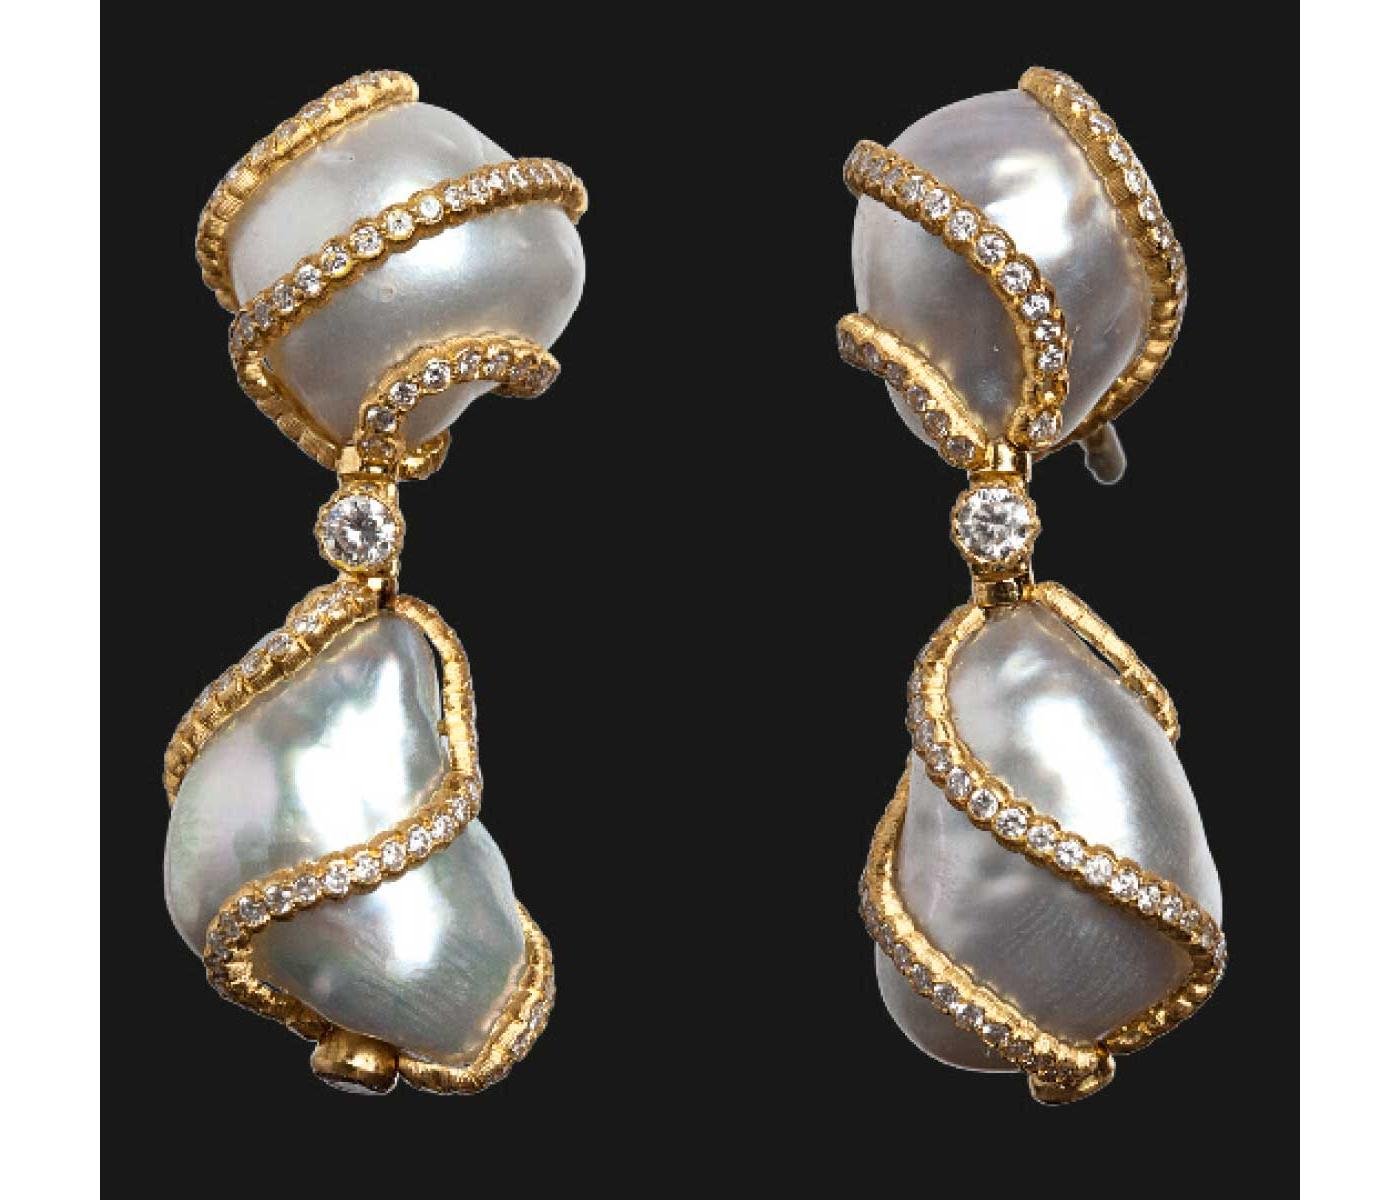 Earrings by Buccellati